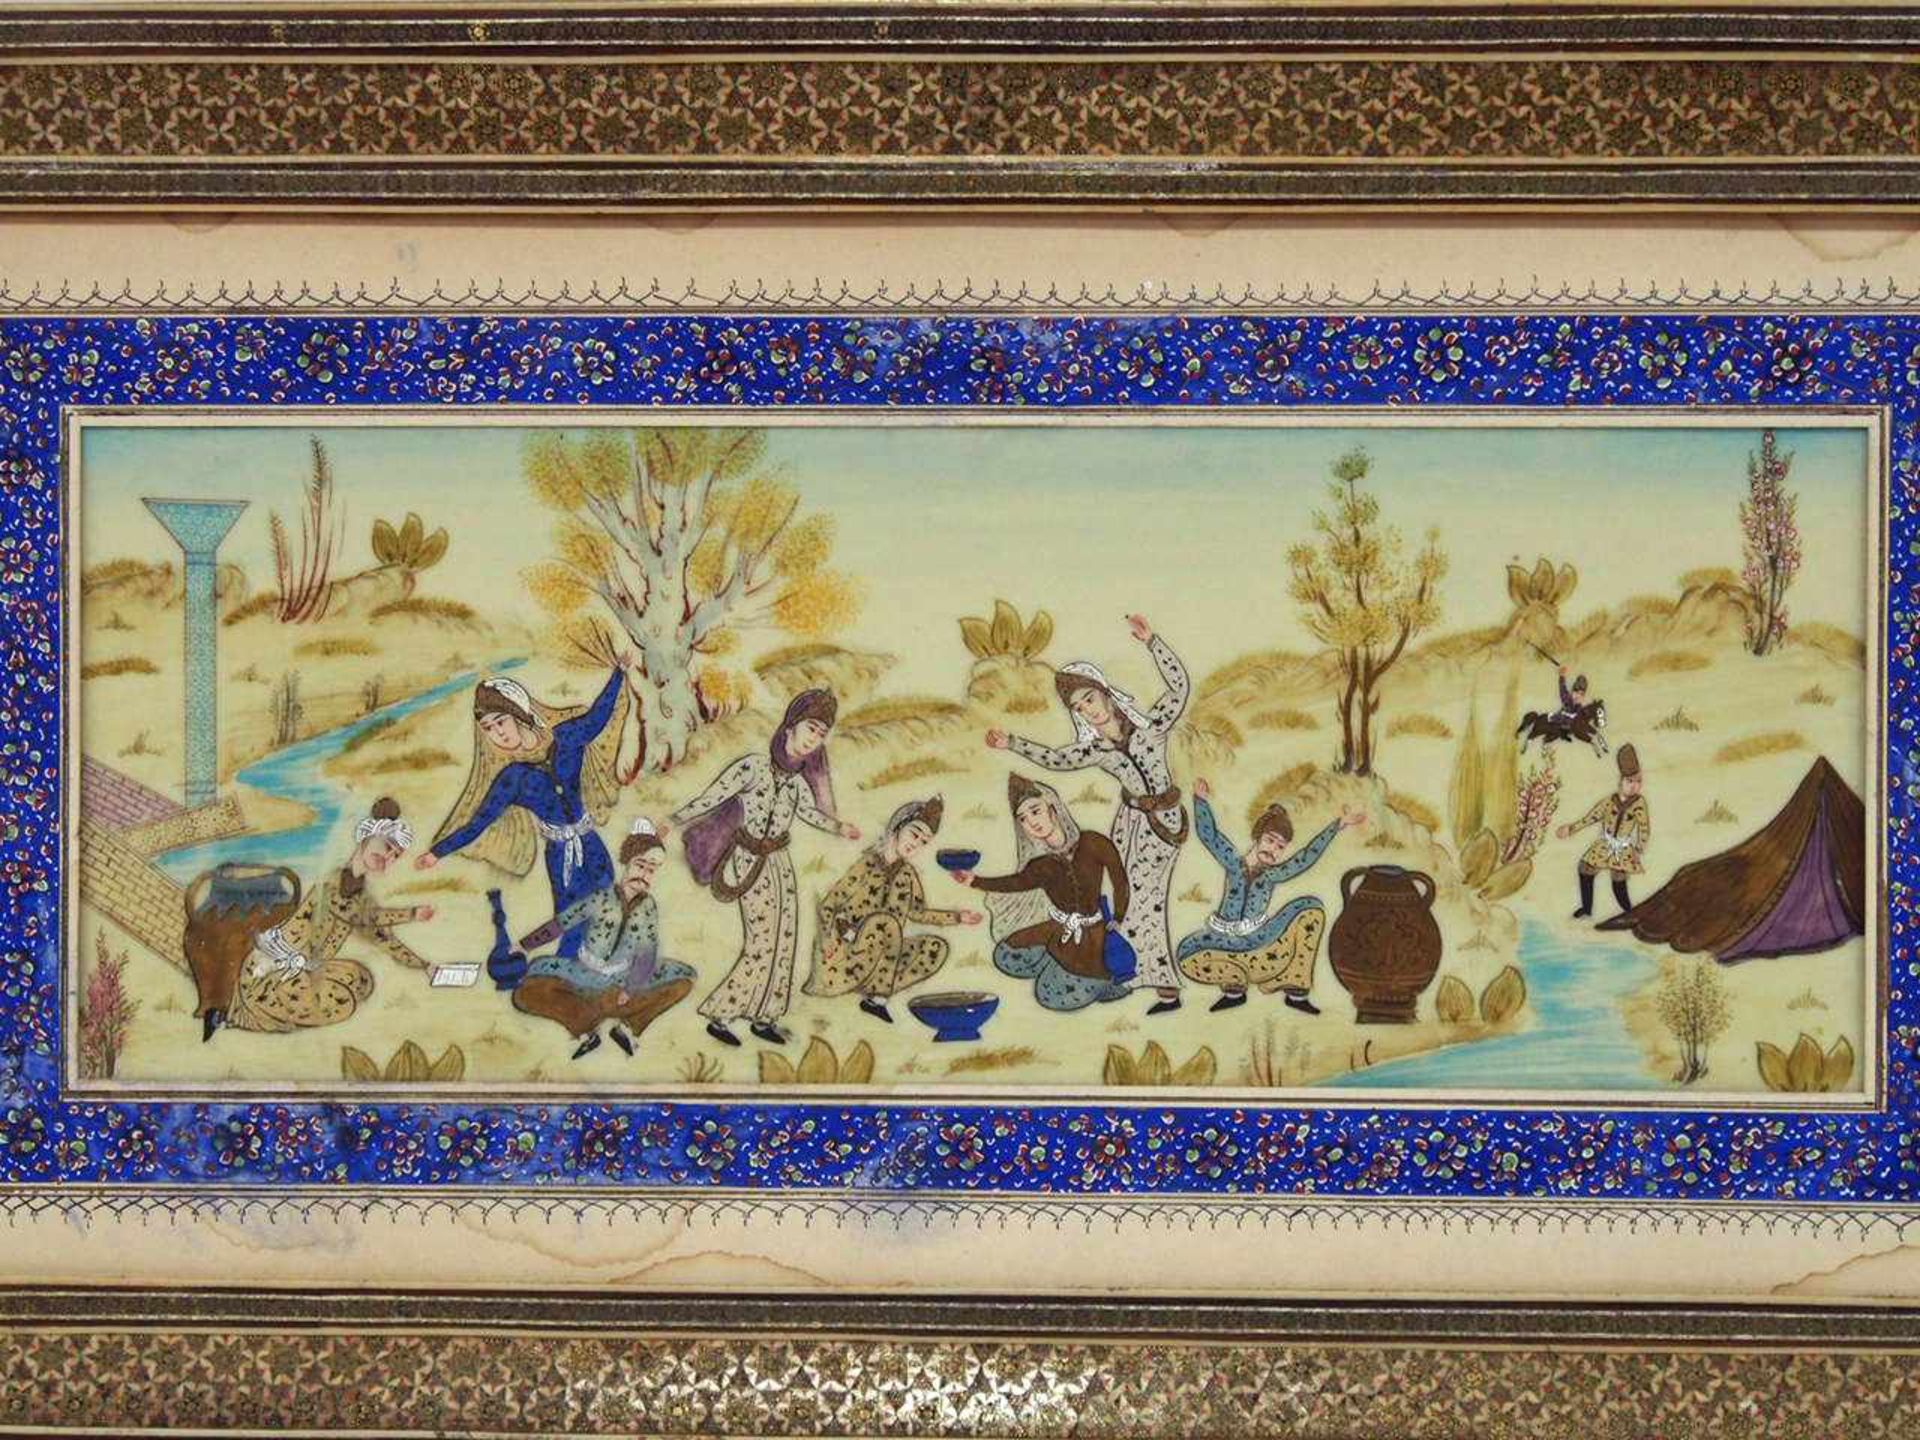 GartenfestMiniaturmalerei auf Elfenbein, Persien, um 1900, 13,5 x 37 cm, gemaltes Passepartout, - Bild 2 aus 3